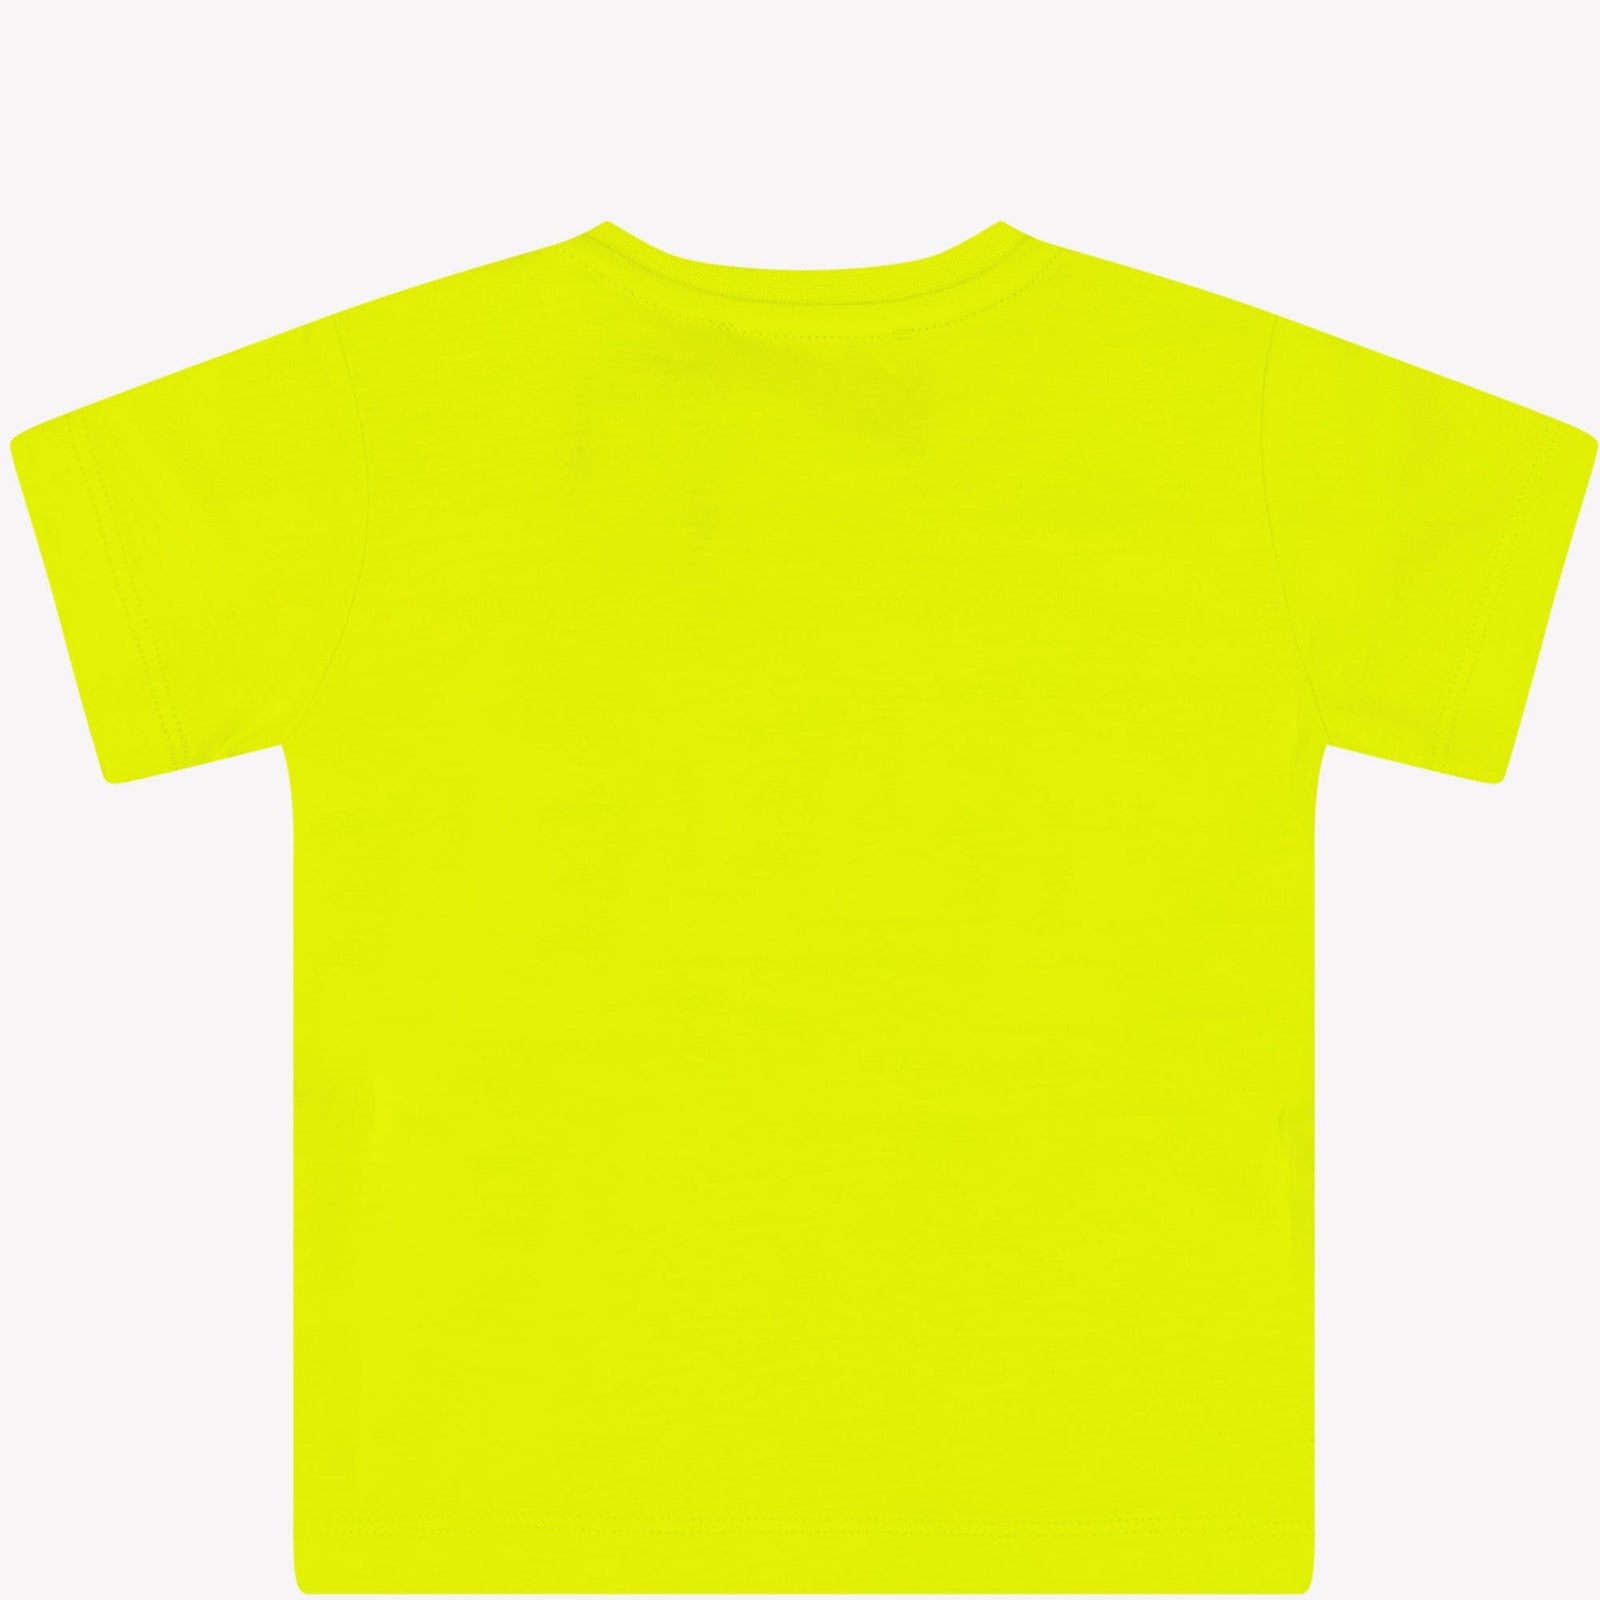 Iceberg Baby Jongens T-shirt Lime 6 mnd